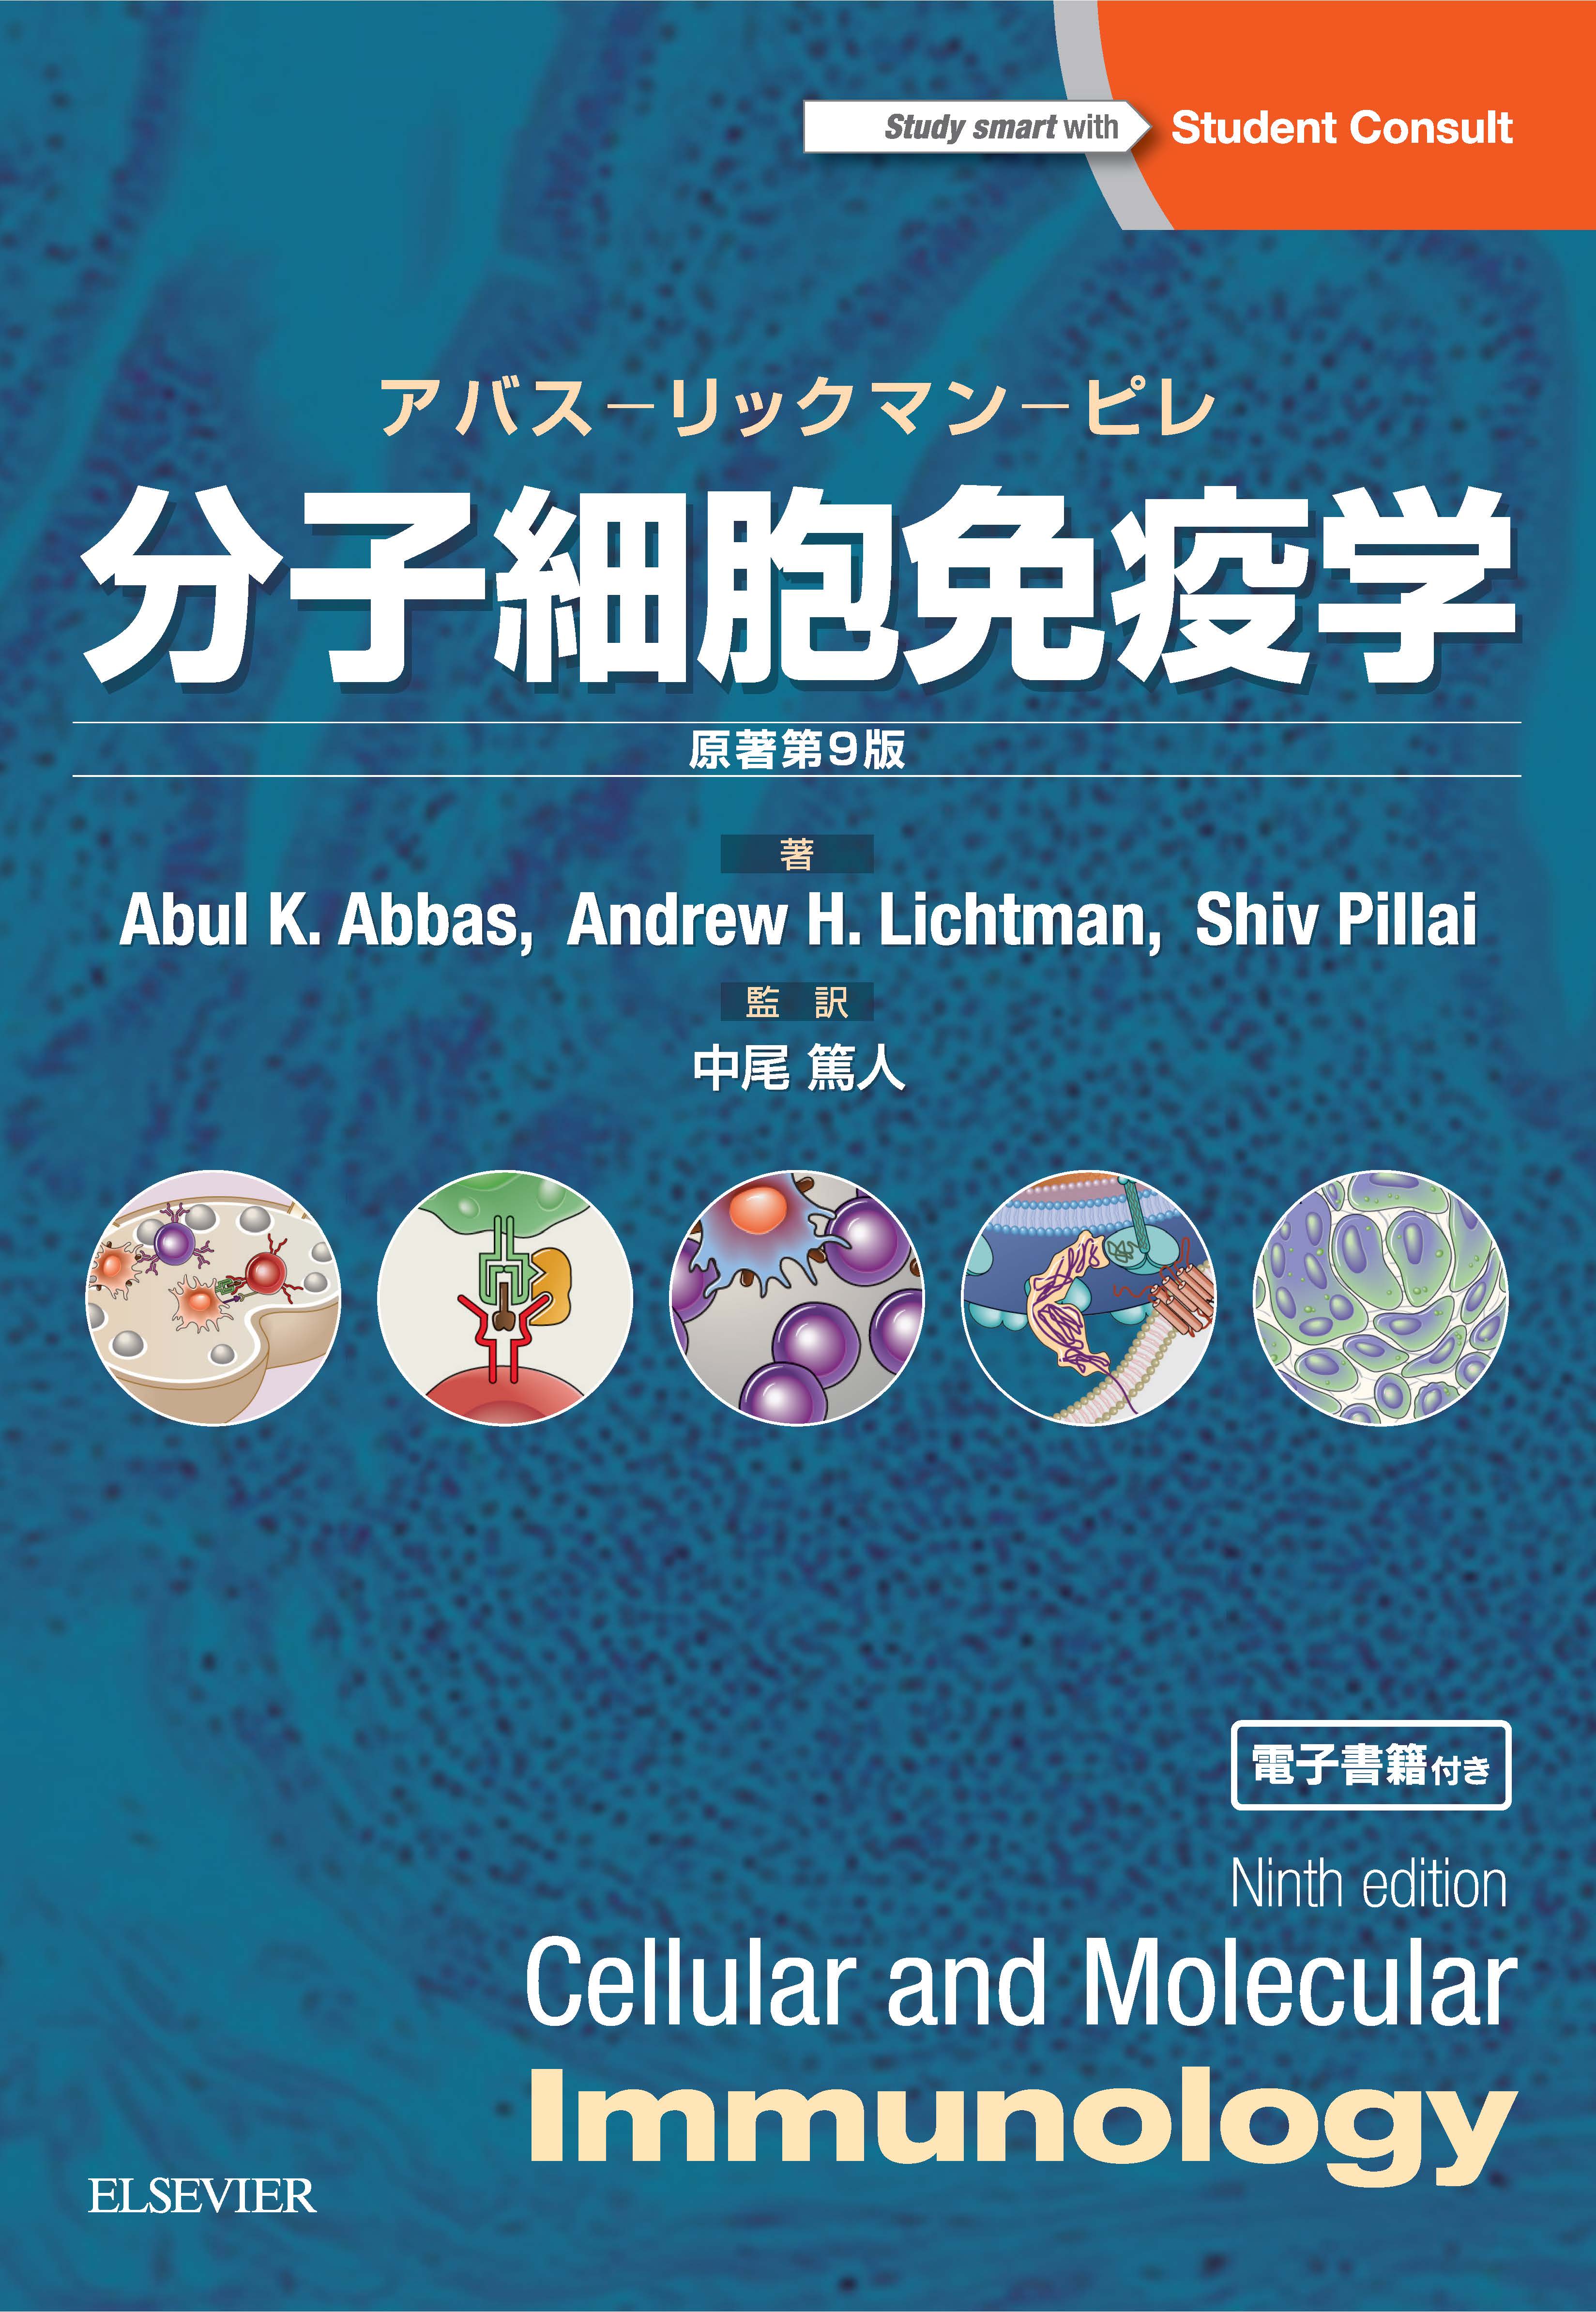 分子細胞免疫学 原著第9版 | 和書 | エルゼビア・ジャパン株式会社